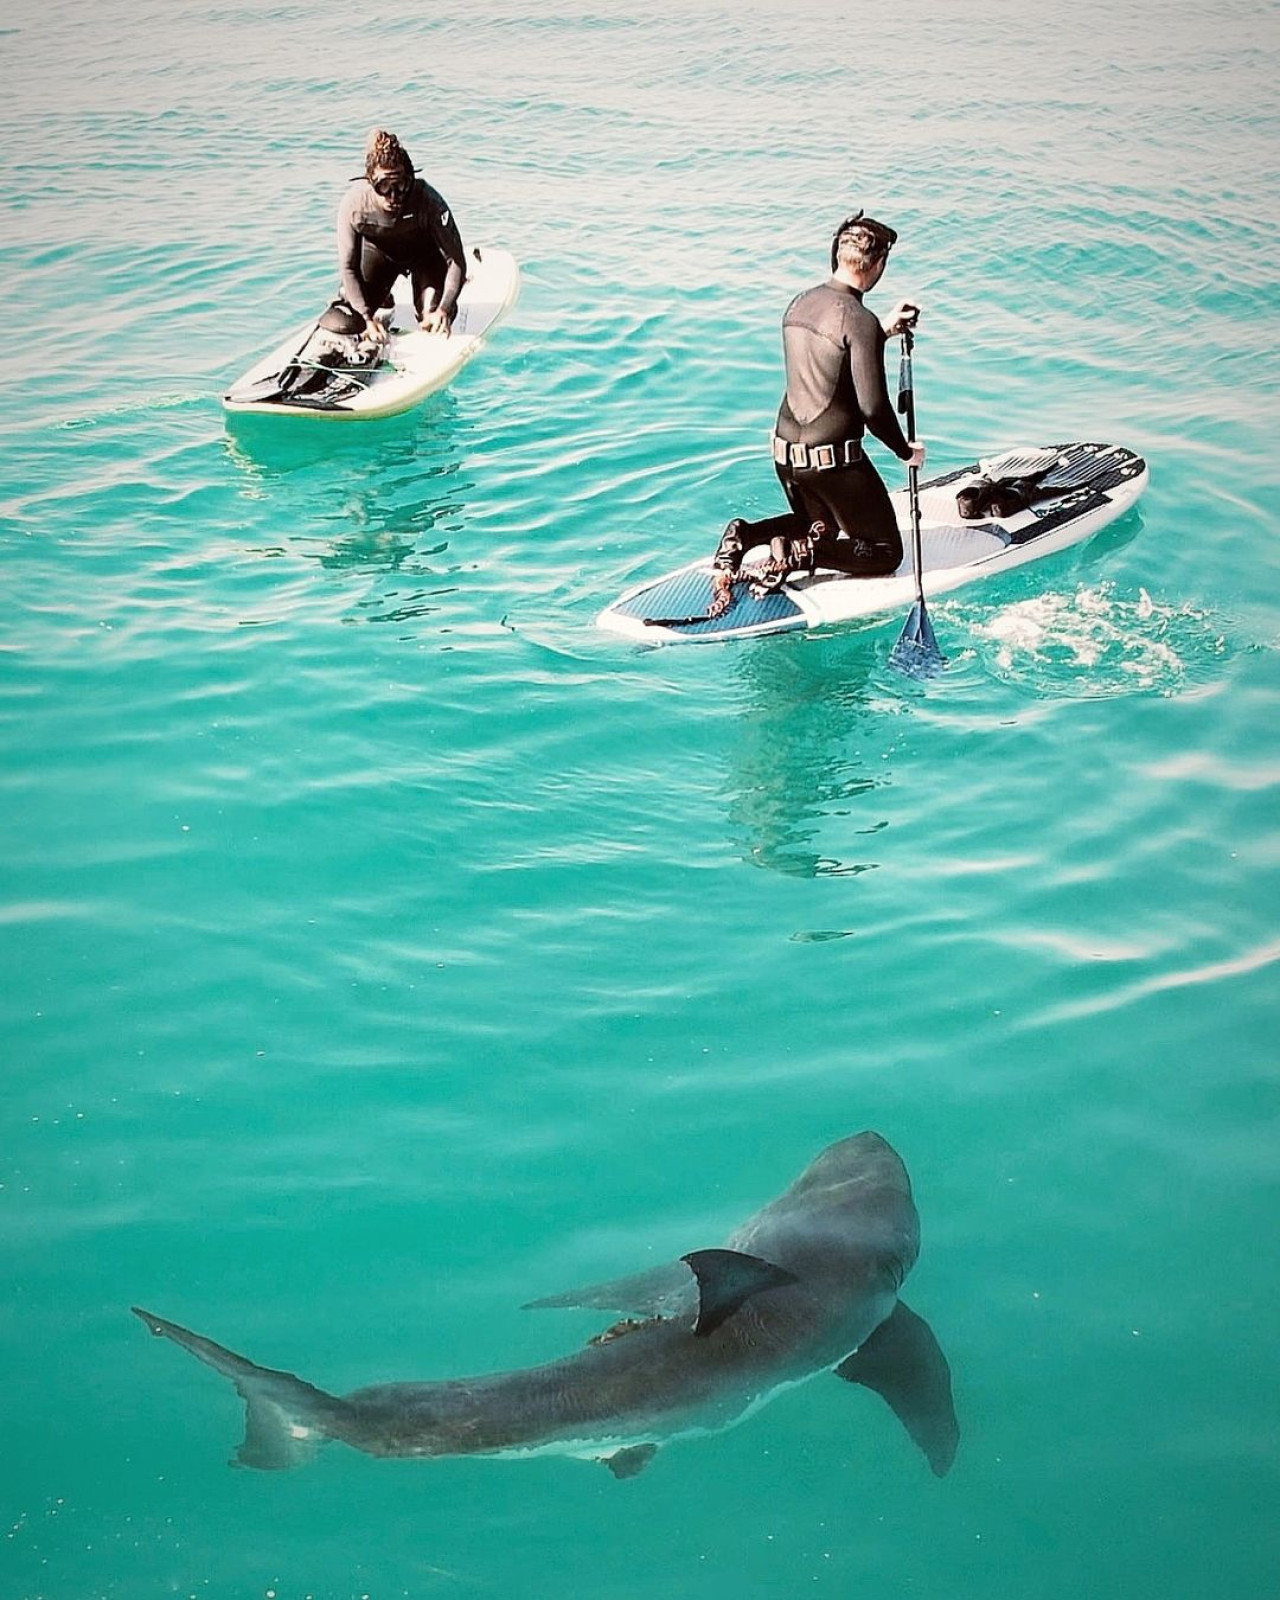 La fascinación de un surfista por los tiburones. Foto Instagram @scott_fairchild.